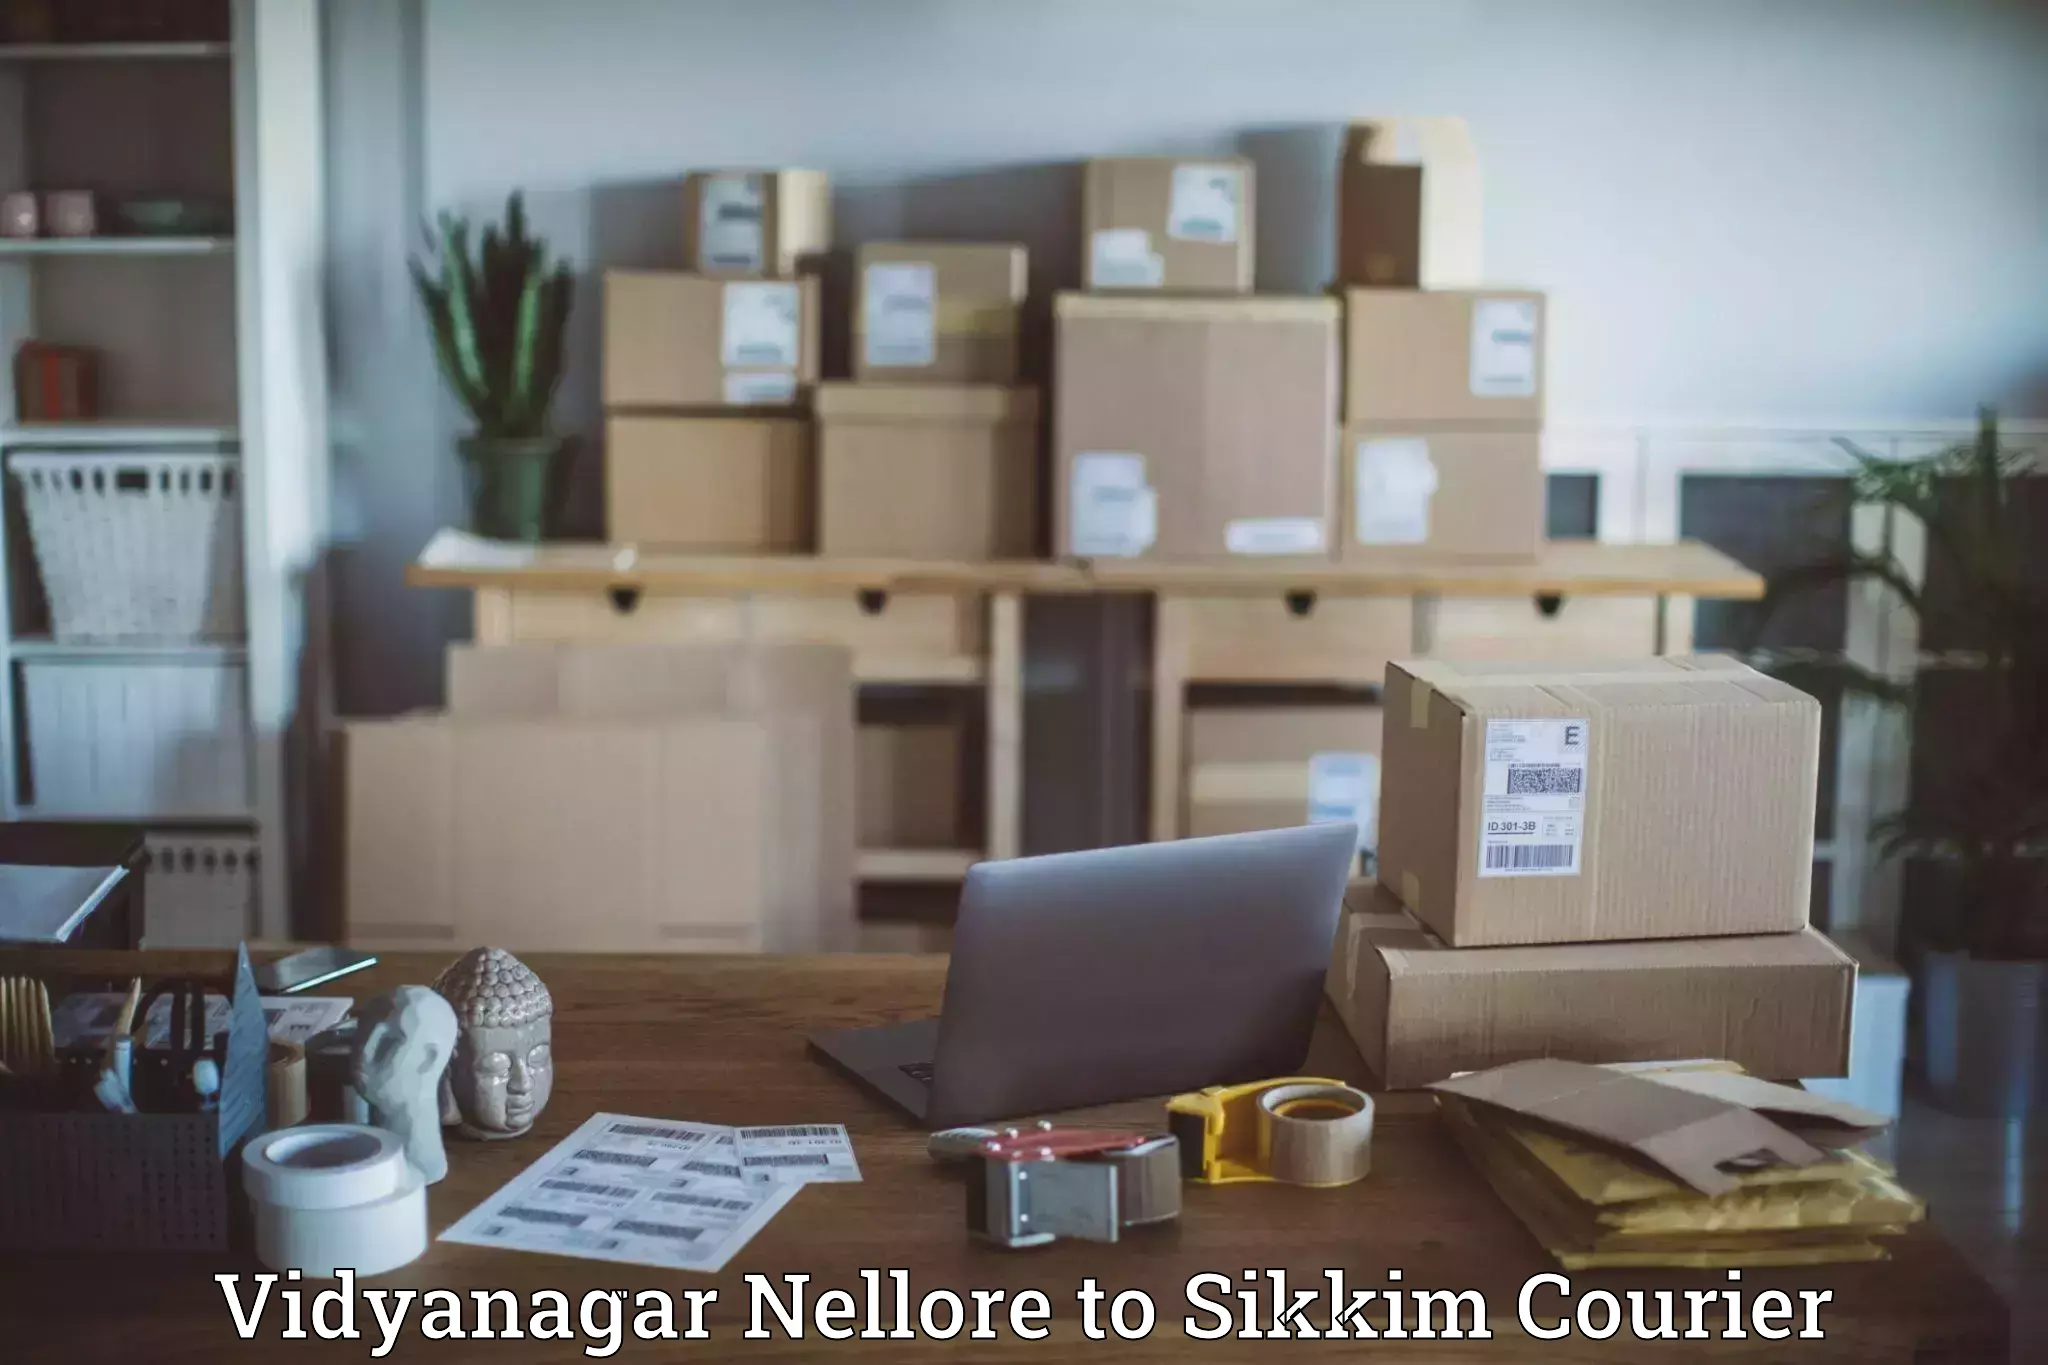 Premium courier services Vidyanagar Nellore to Sikkim